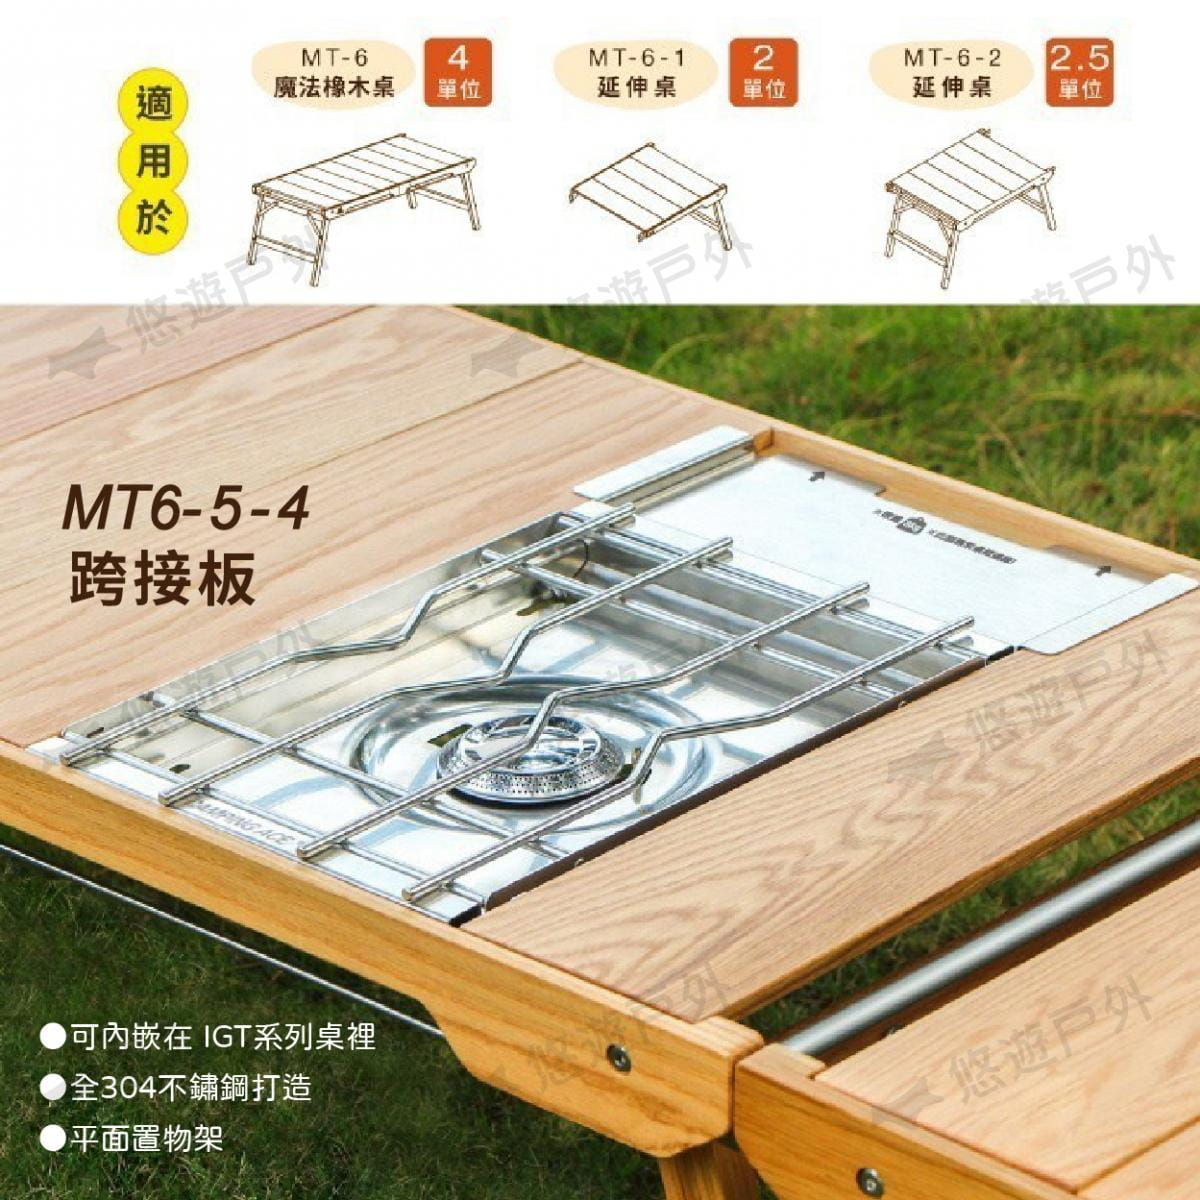 【Morixon】魔法橡木桌  IGT MT-6-5-4 野樂單口爐專用配件 (悠遊戶外) 4